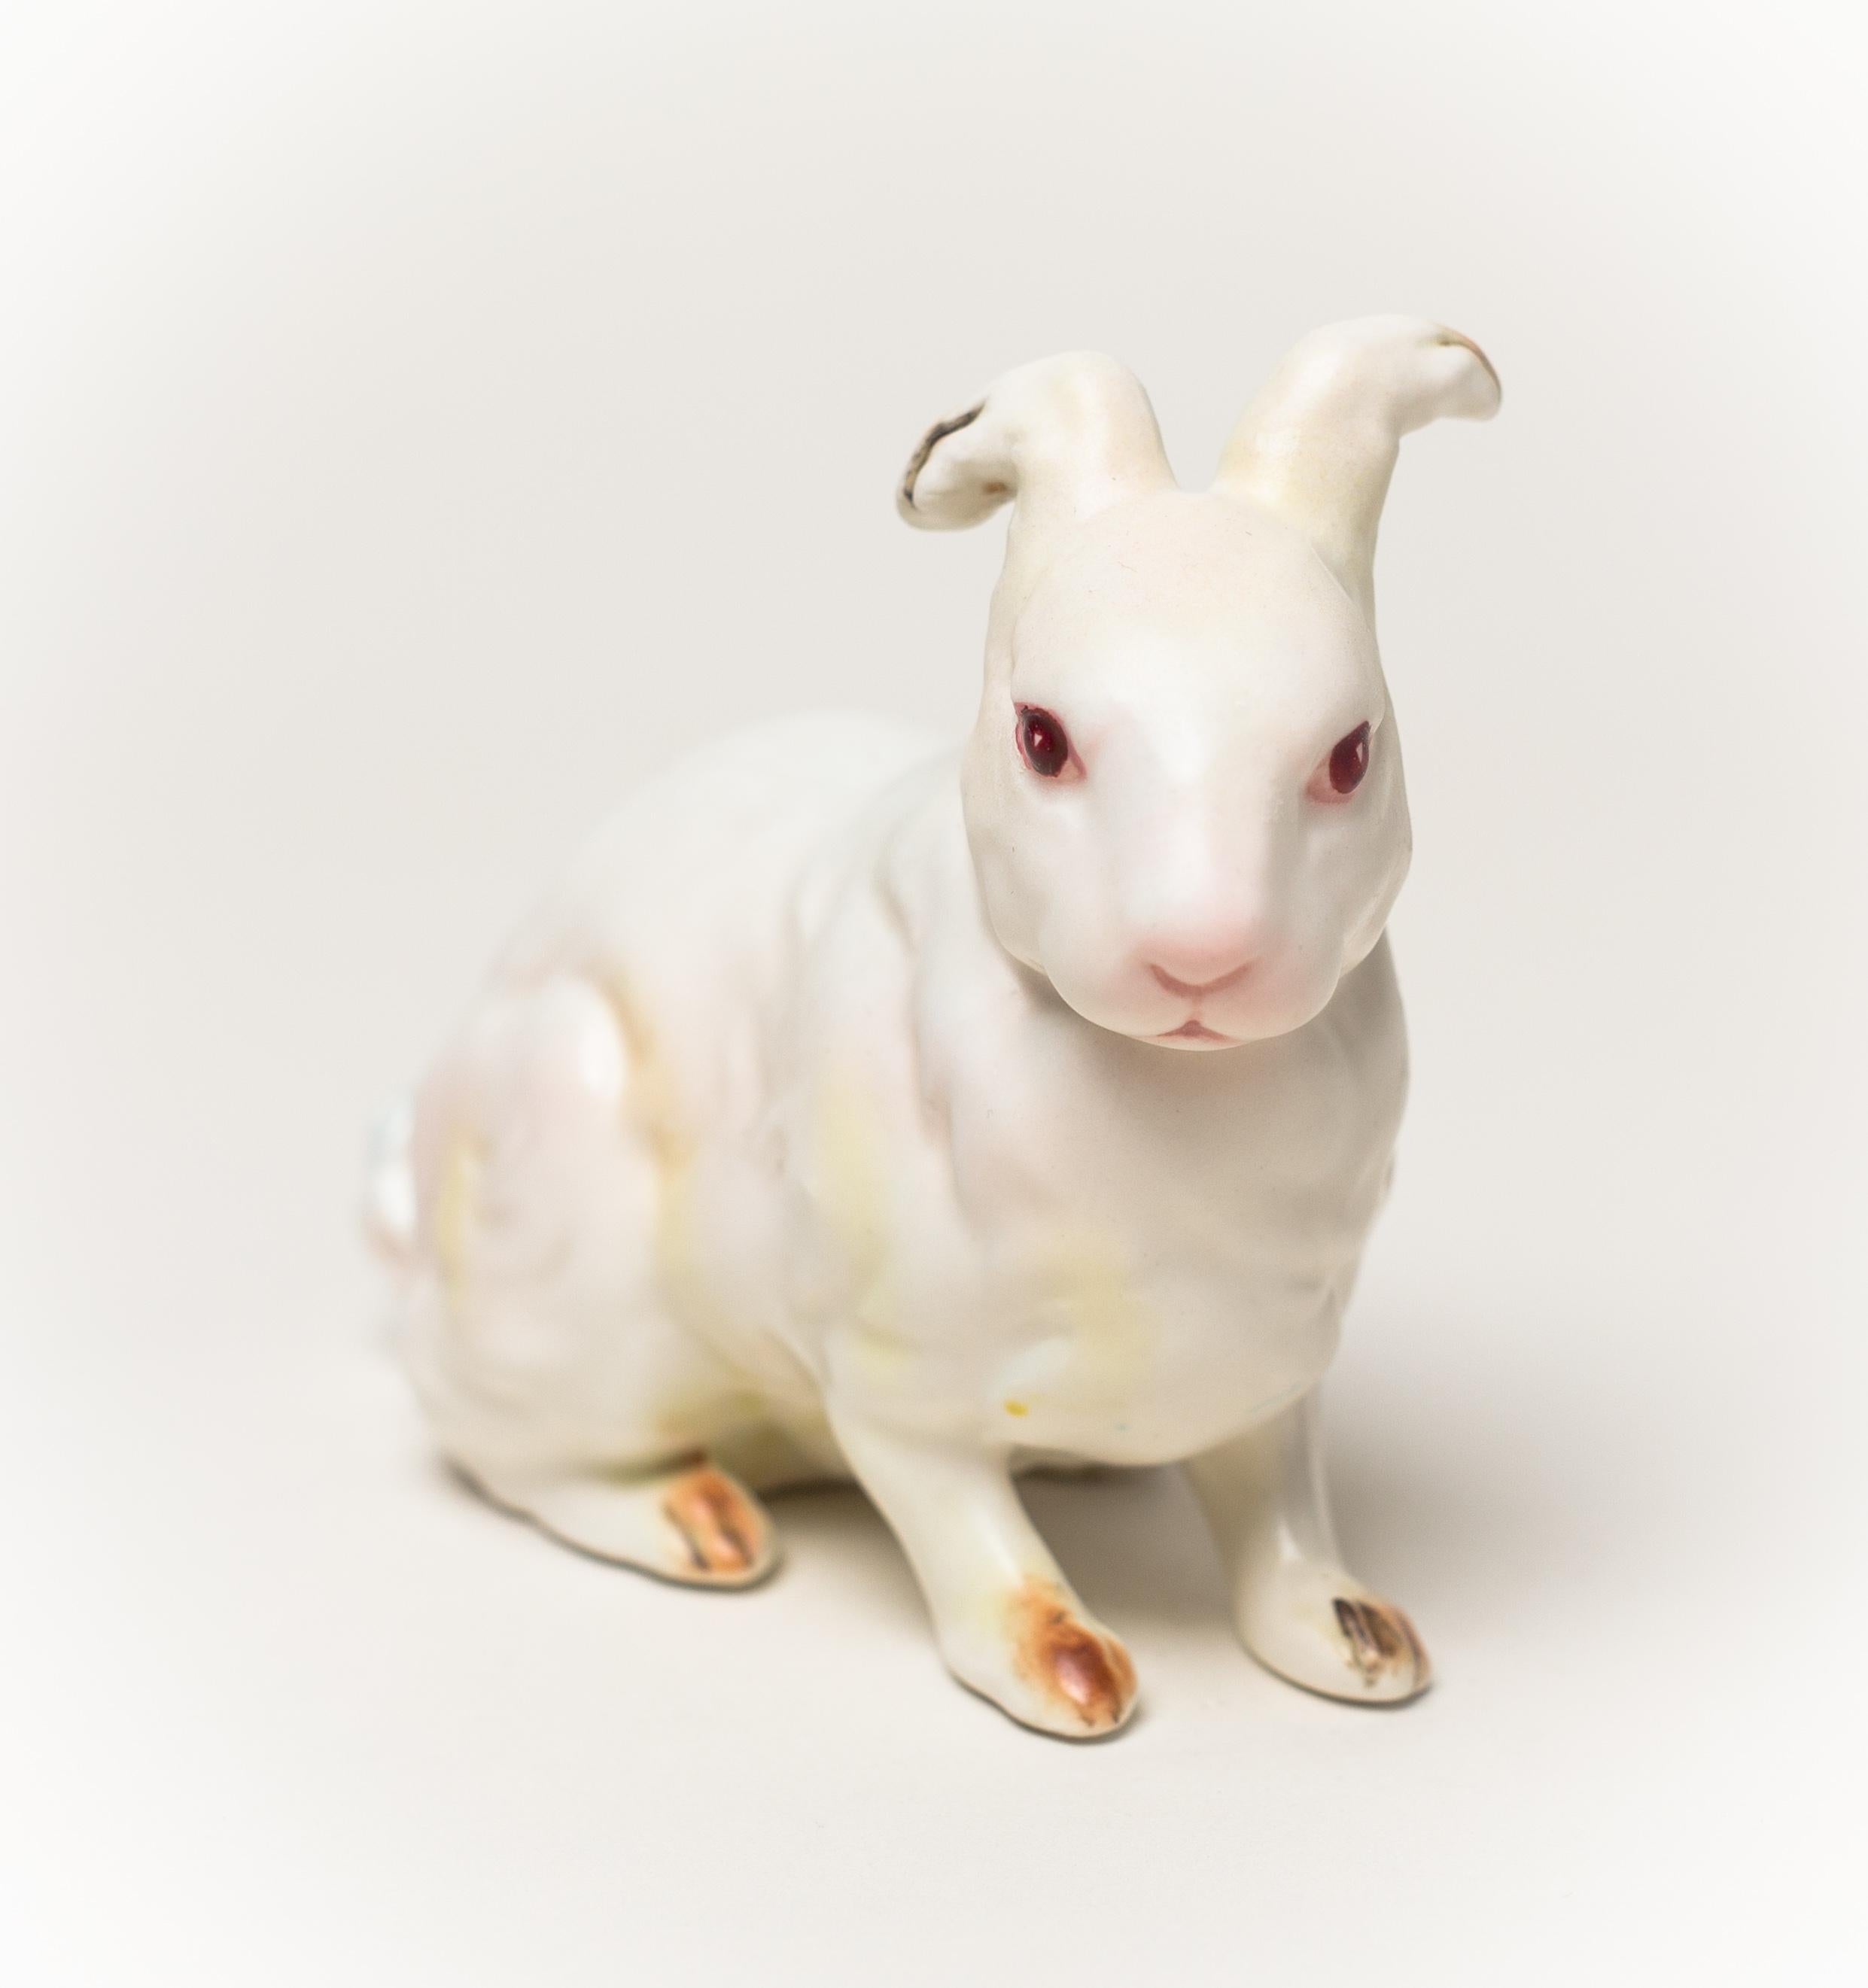 Debra Broz Figurative Sculpture - White Rabbit, No. 23